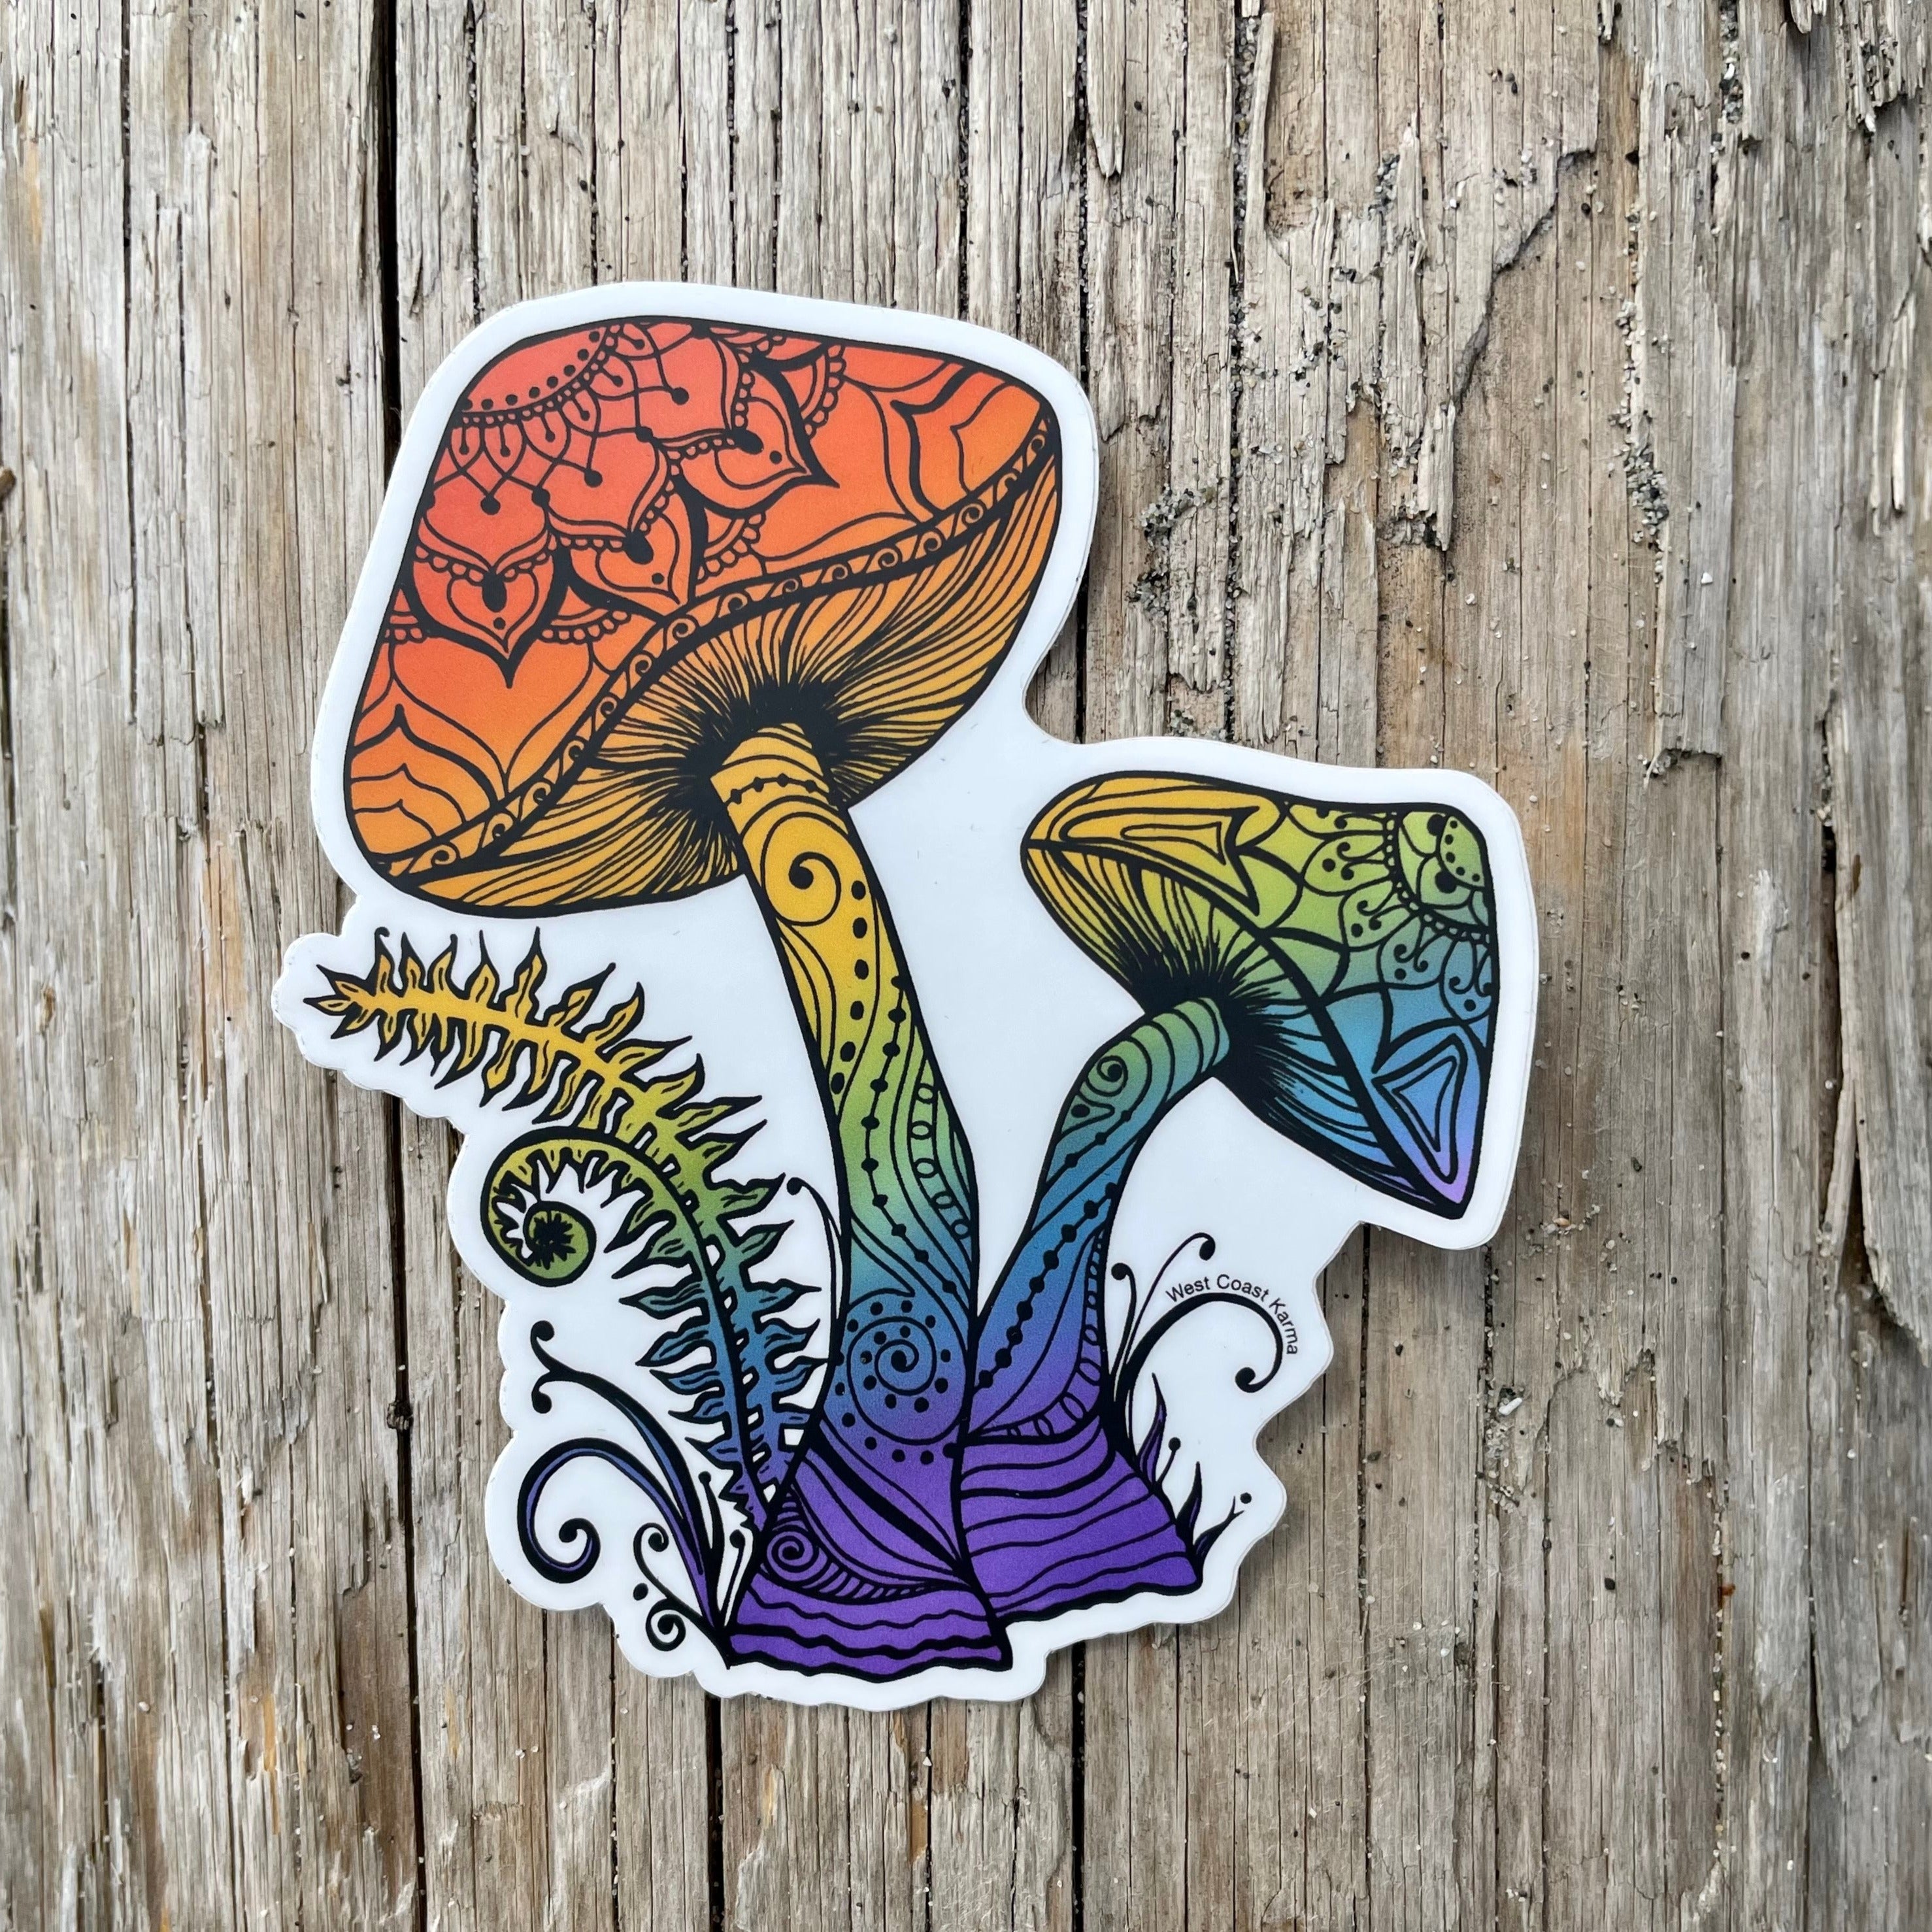 Vinyl Sticker - Emotional Support Mushroom